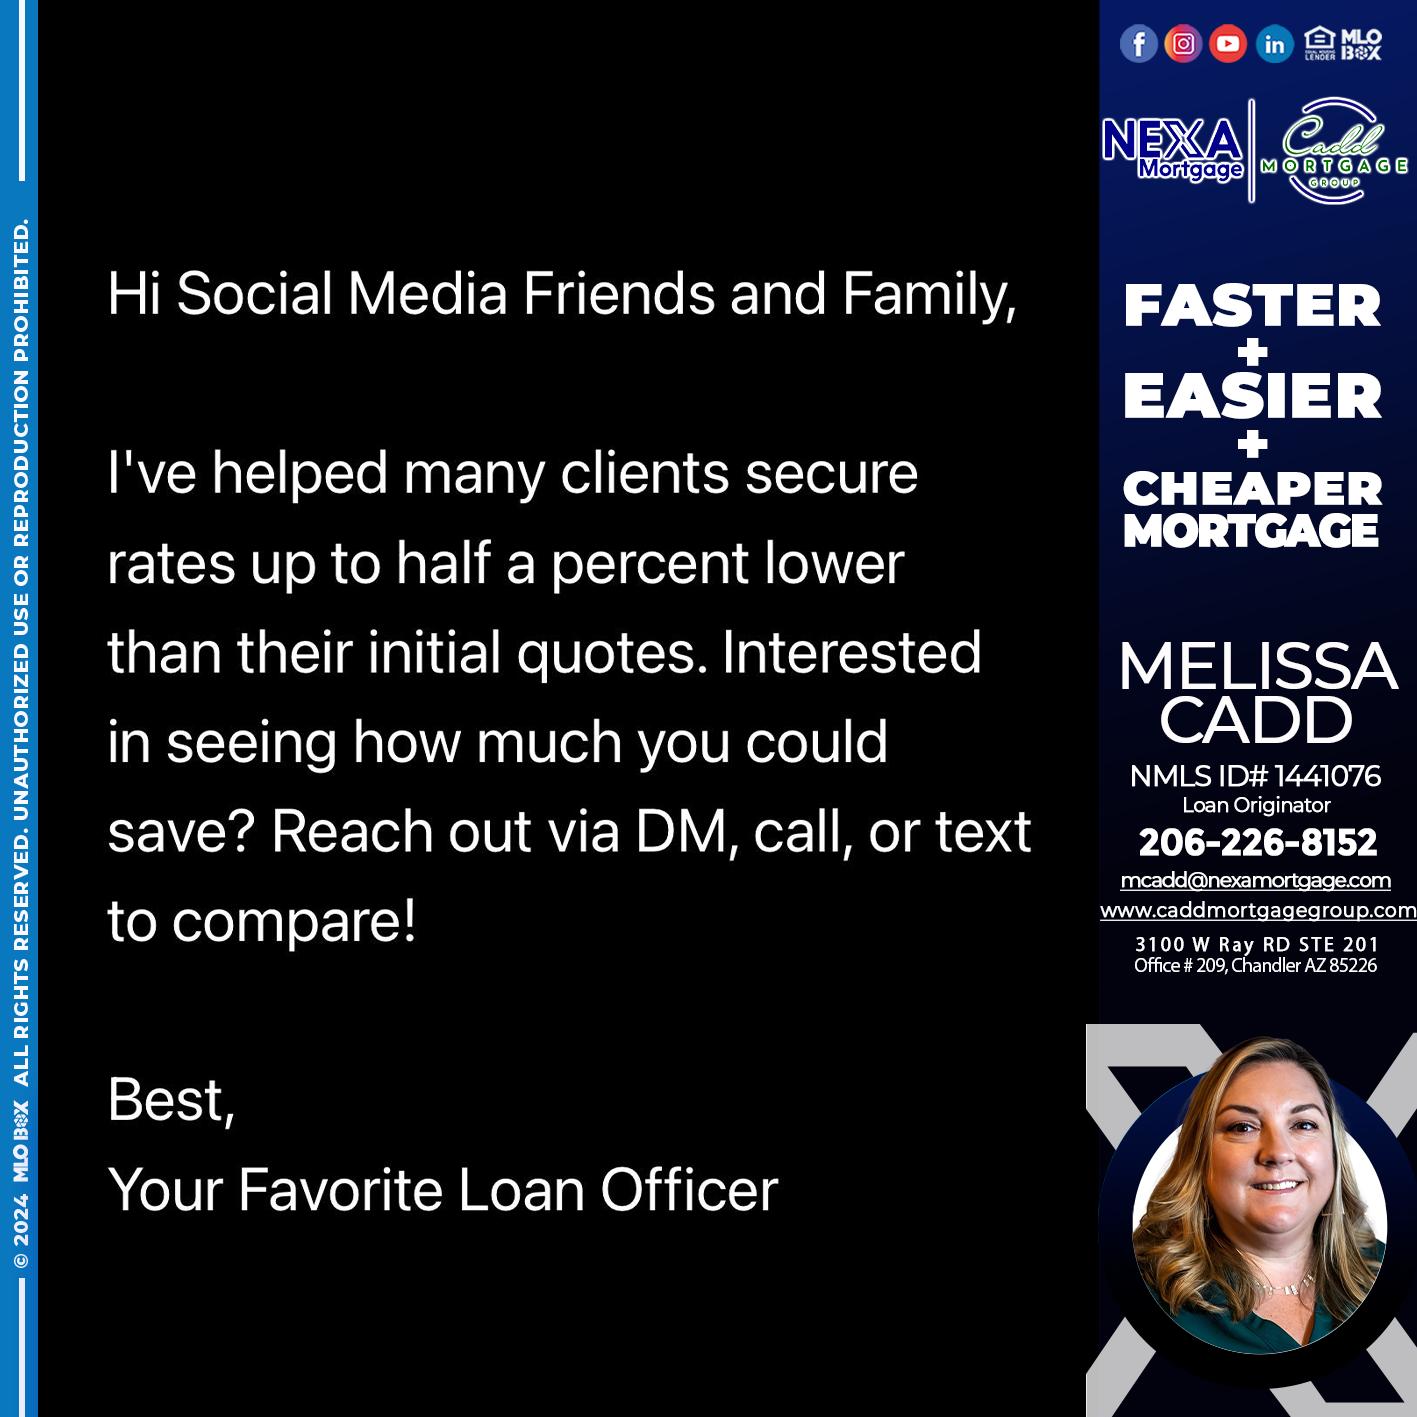 SOCIAL MEDIA - Melissa Cadd -Loan Originator